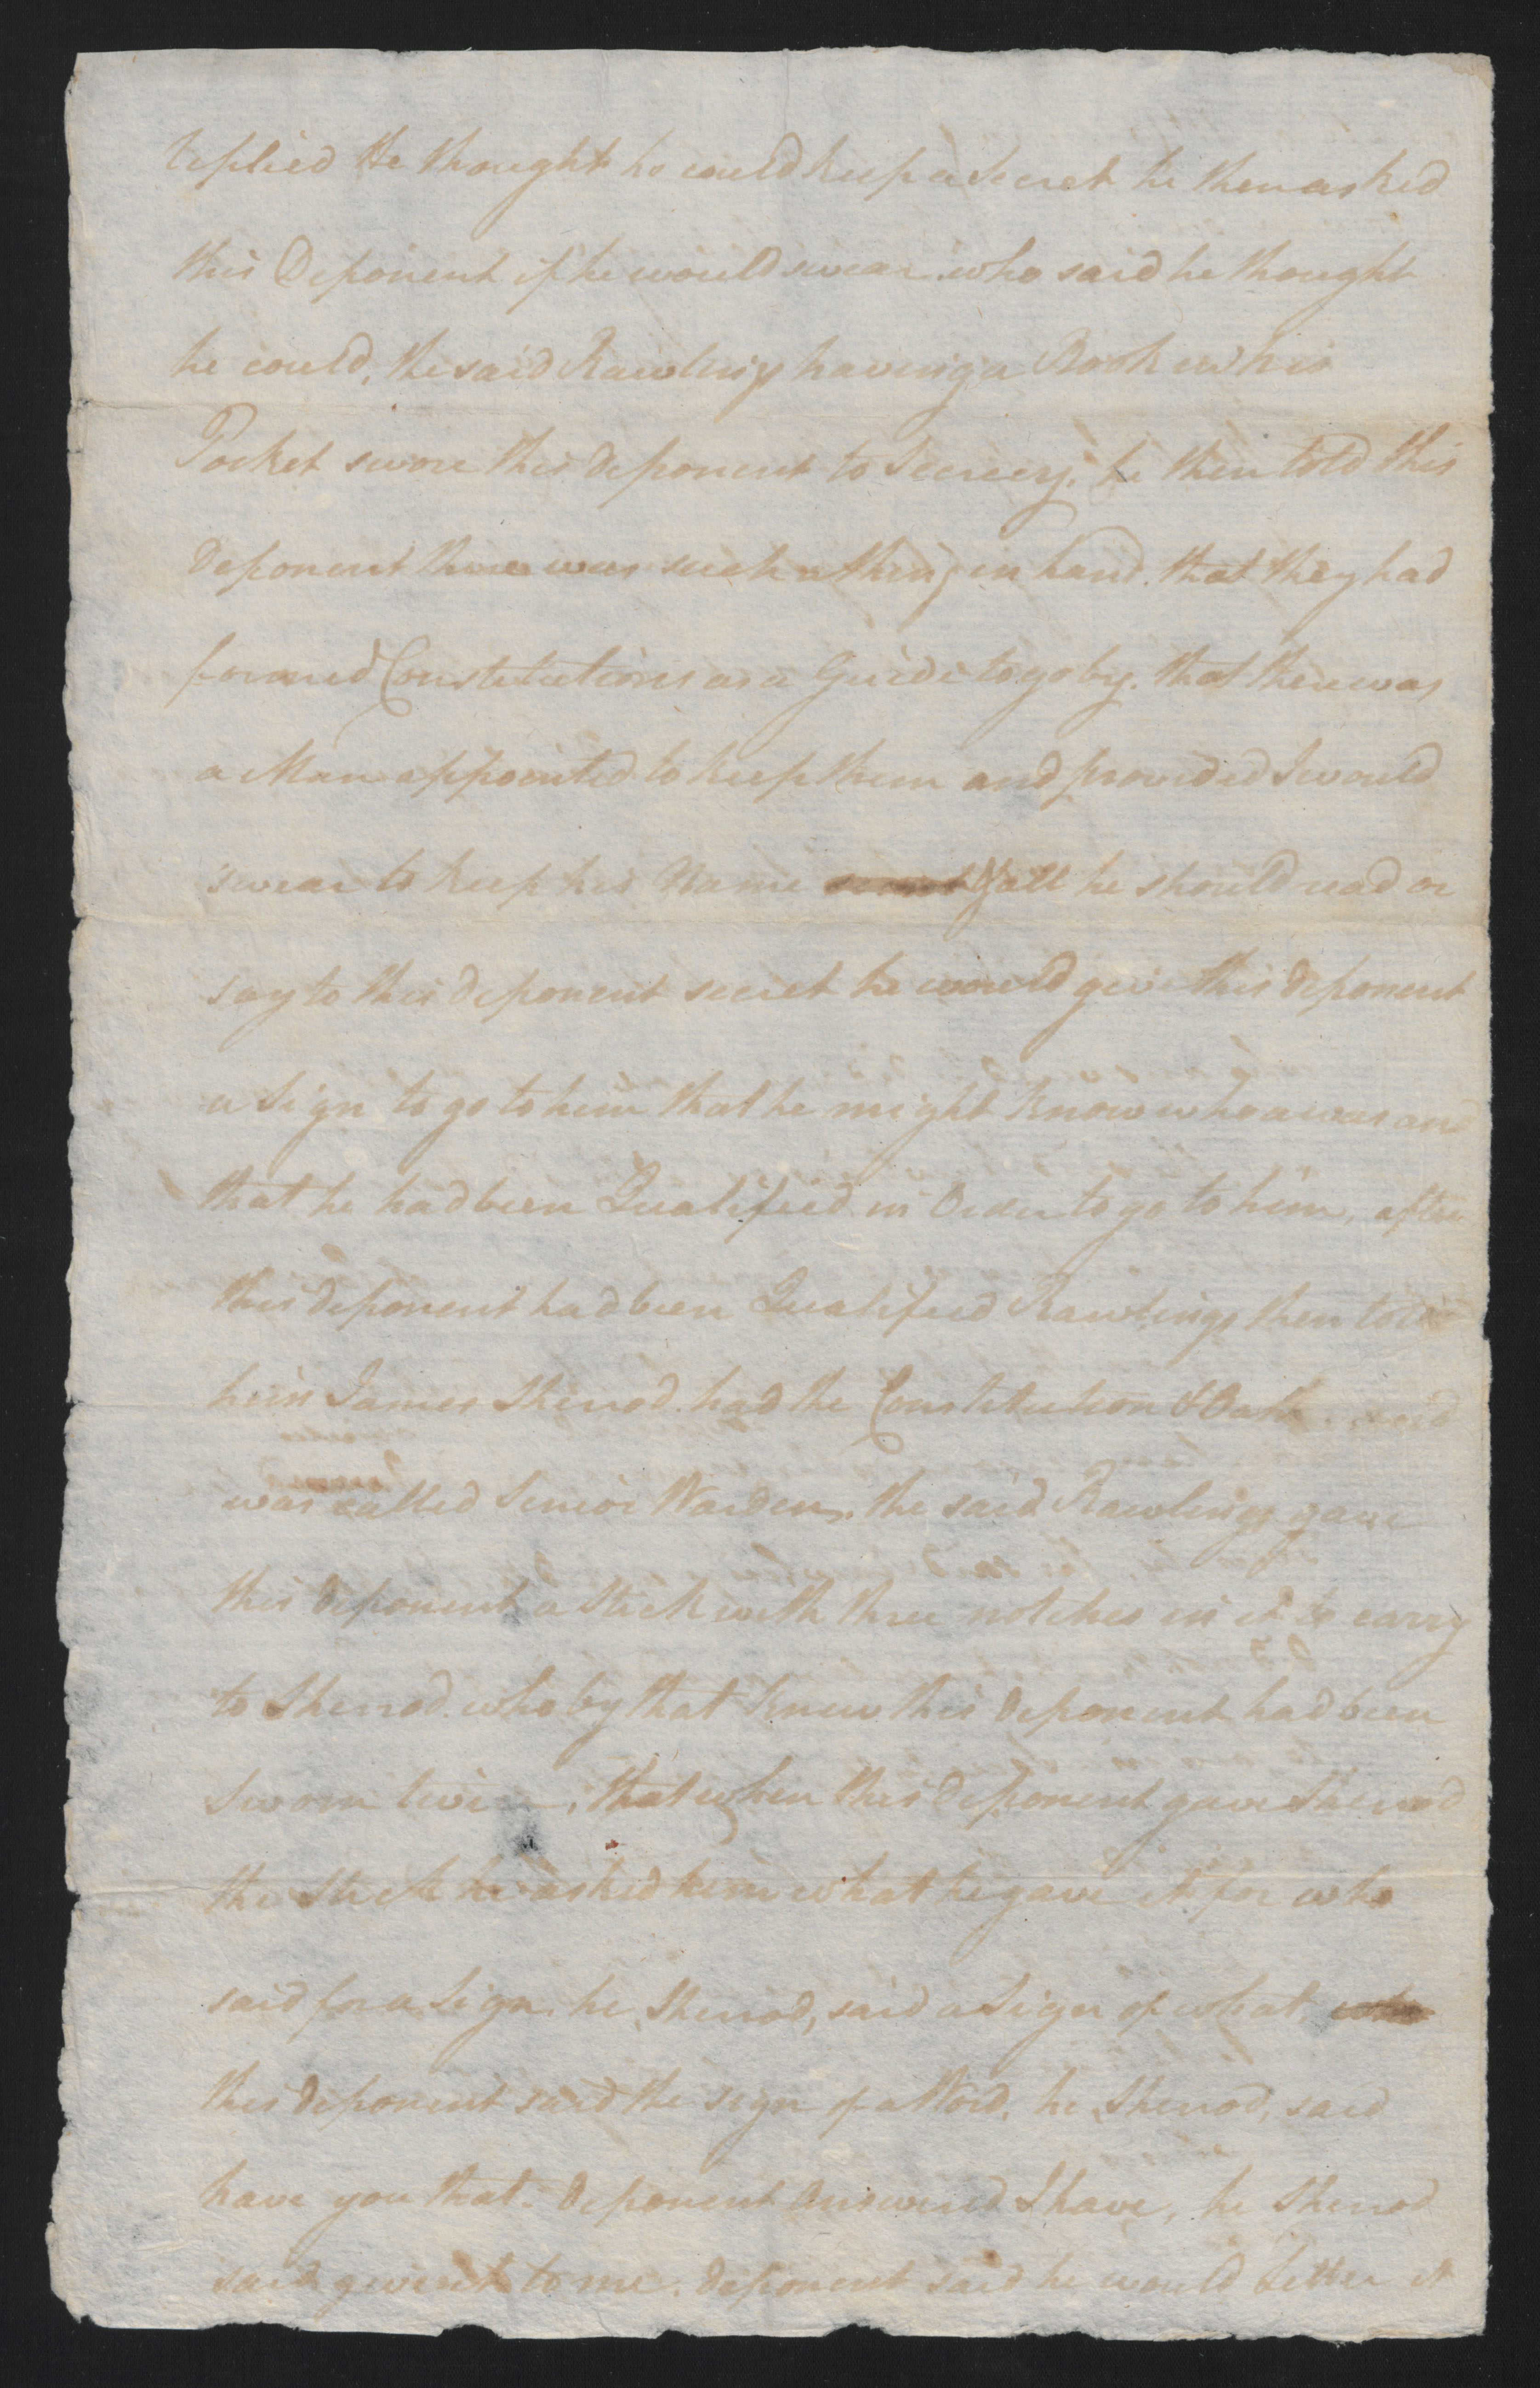 Deposition of Daniel Leggett, 13 August 1777, page 2